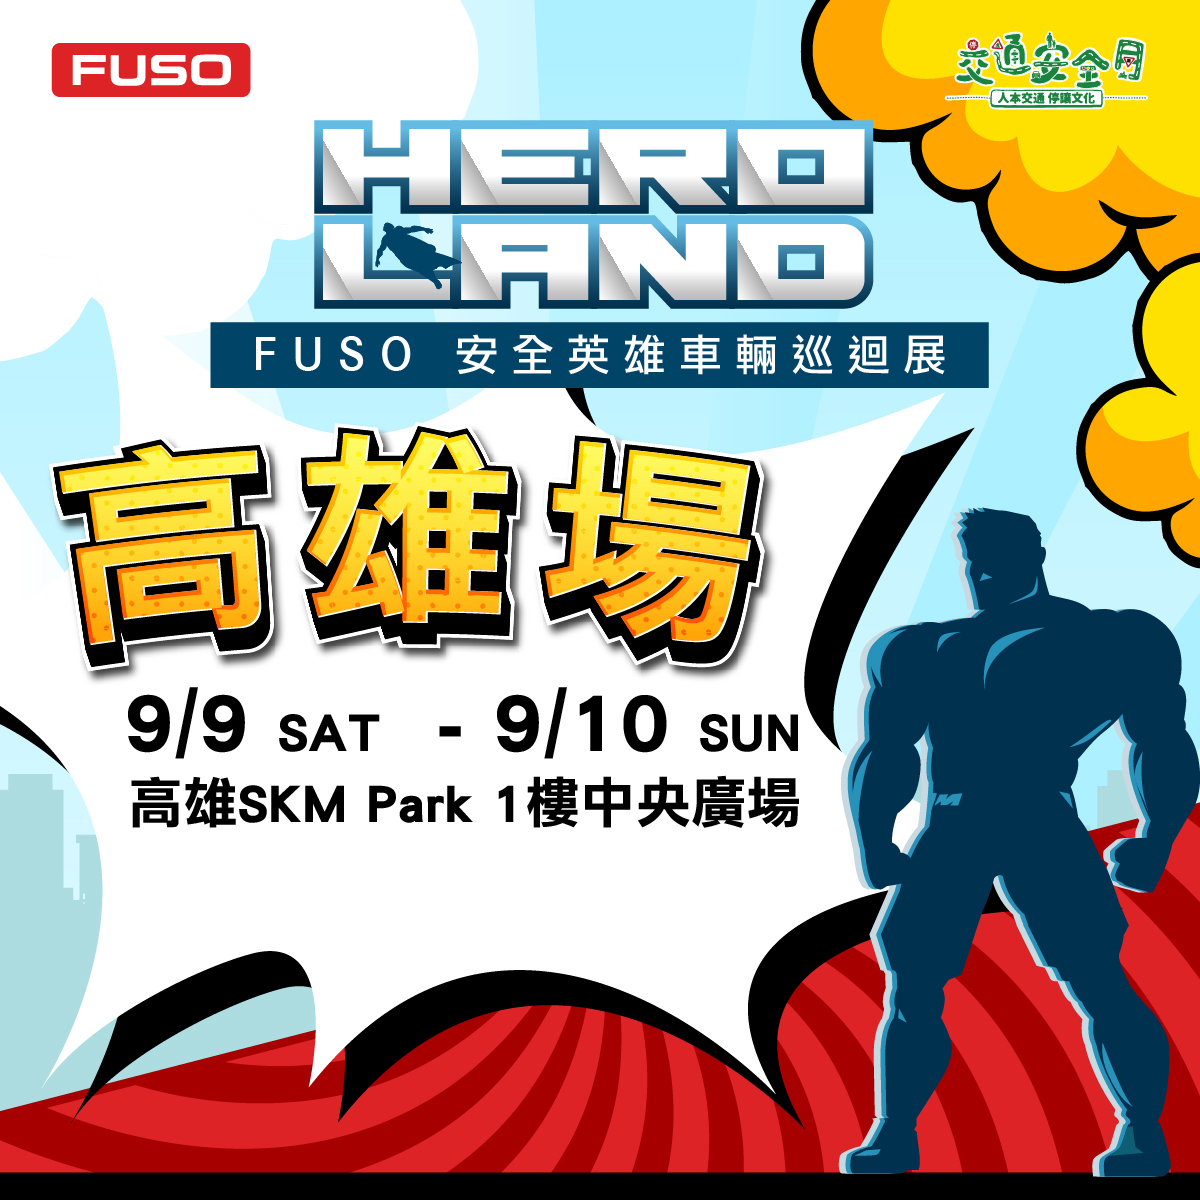 【圖4】『HERO LAND  FUSO安全英雄車輛巡迴展』於9月9日至10日在高雄草衙道舉辦.jpg